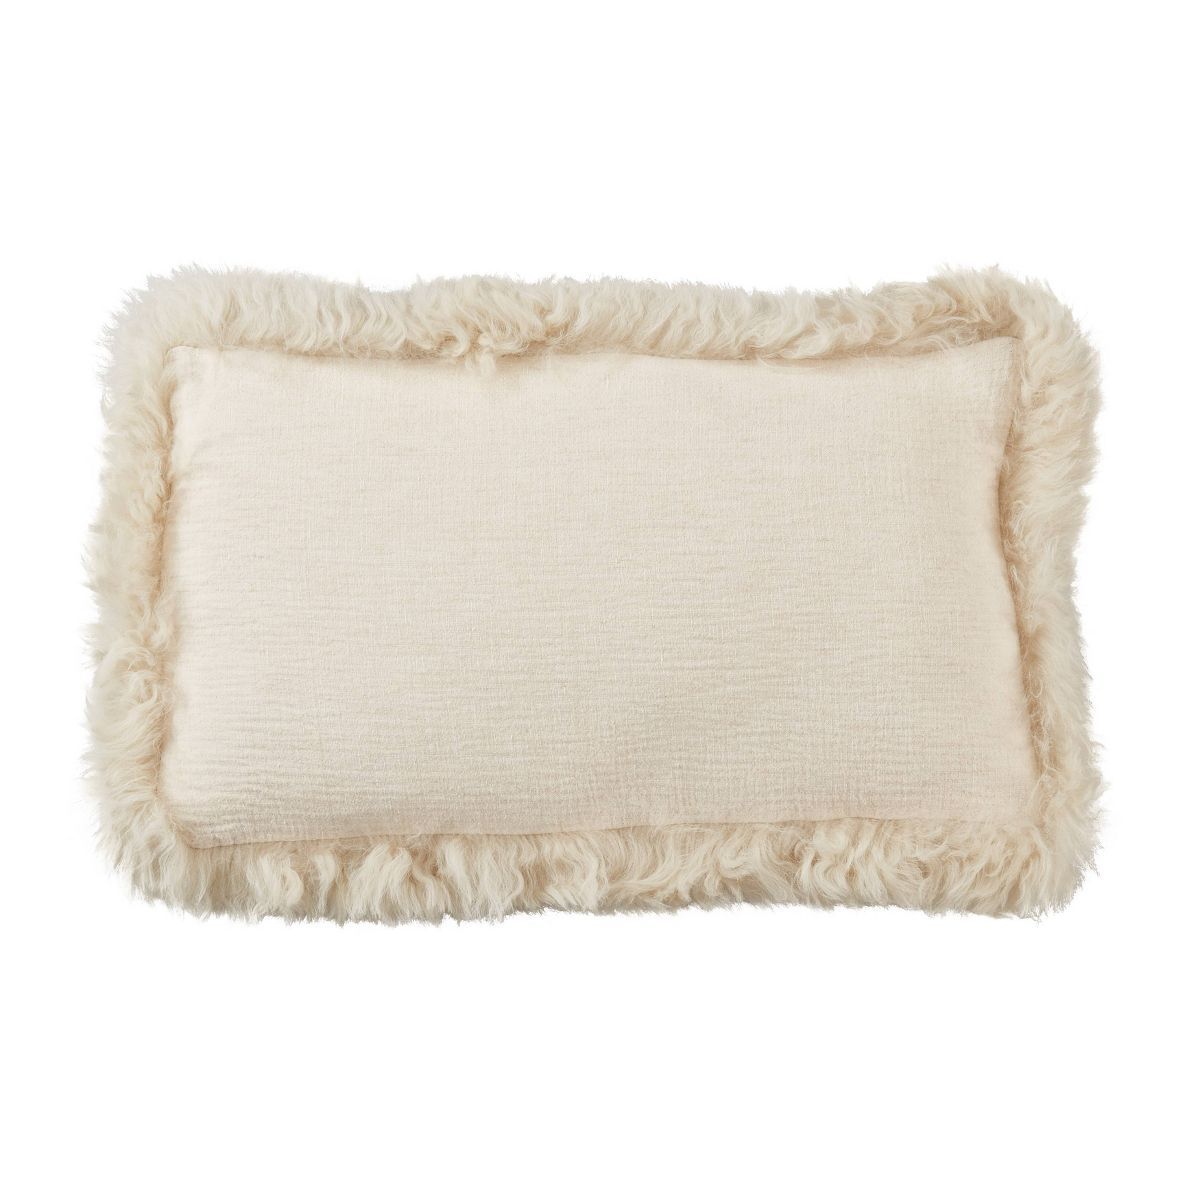 12"x20" Oversize Luxurious Linen Poly Filled with Plush Lamb Fur Border Lumbar Throw Pillow - Sar... | Target